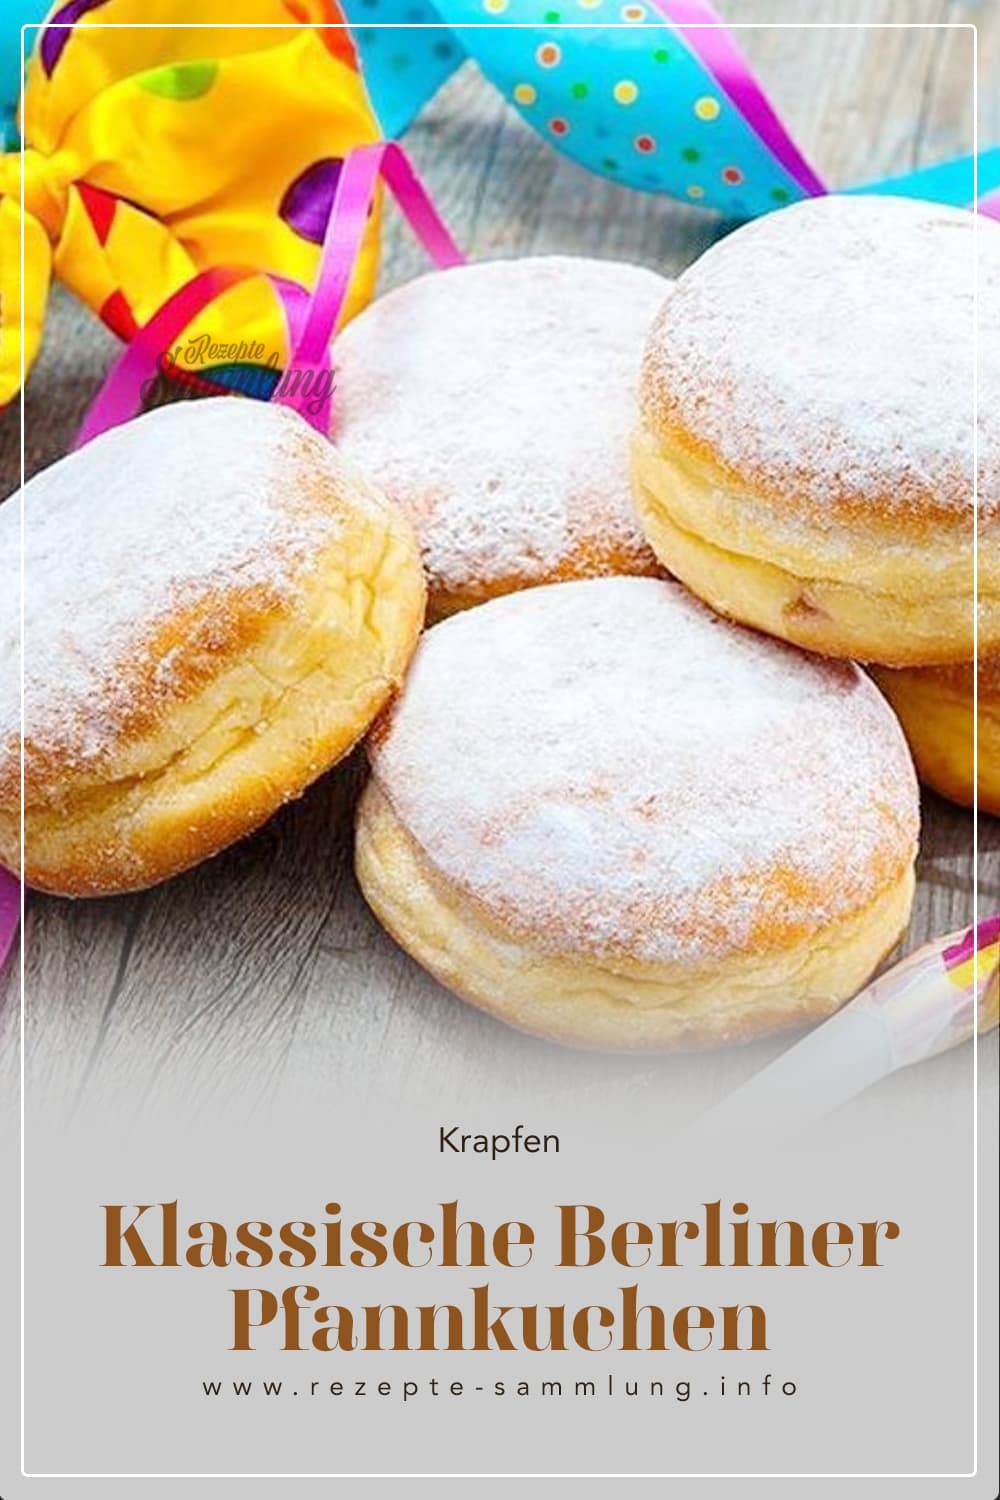 Klassische Berliner Pfannkuchen - Berliner wie vom Bäcker mit einfachem ...